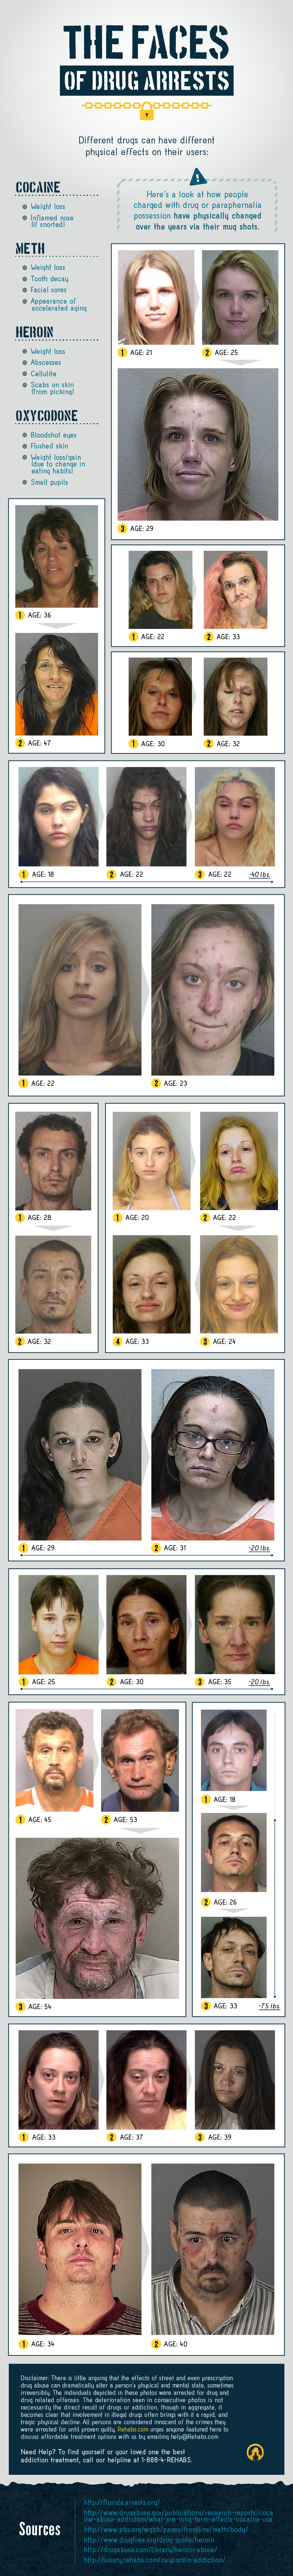 Εικόνες που σοκάρουν: Πρόσωπα πριν και πρόσωπα μετά τη χρήση ναρκωτικών